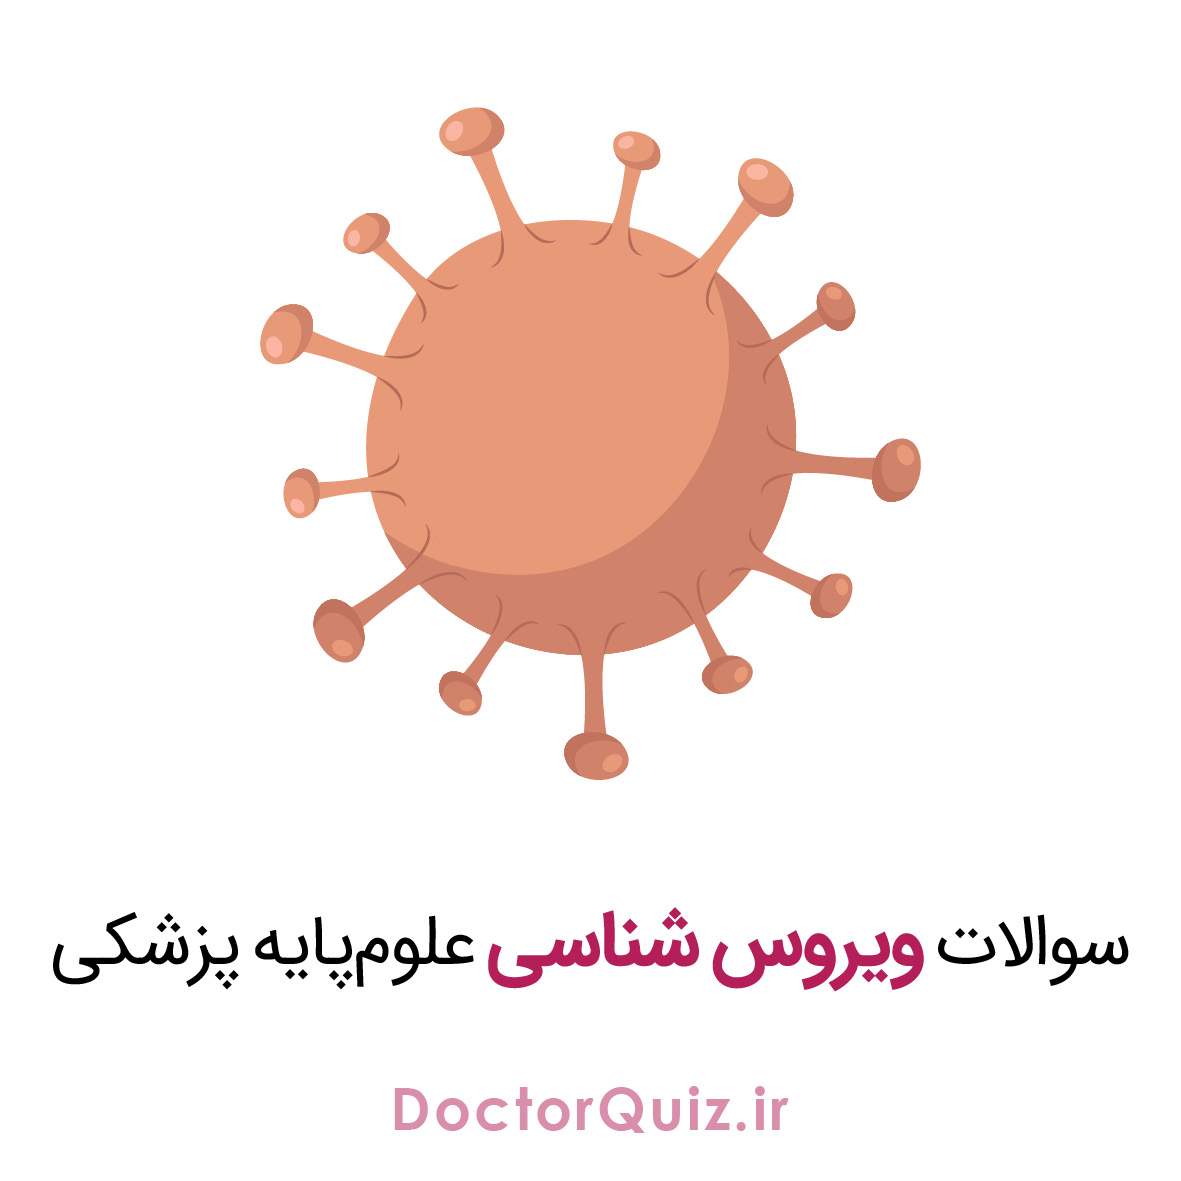 ویروس شناسی، علوم پایه پزشکی